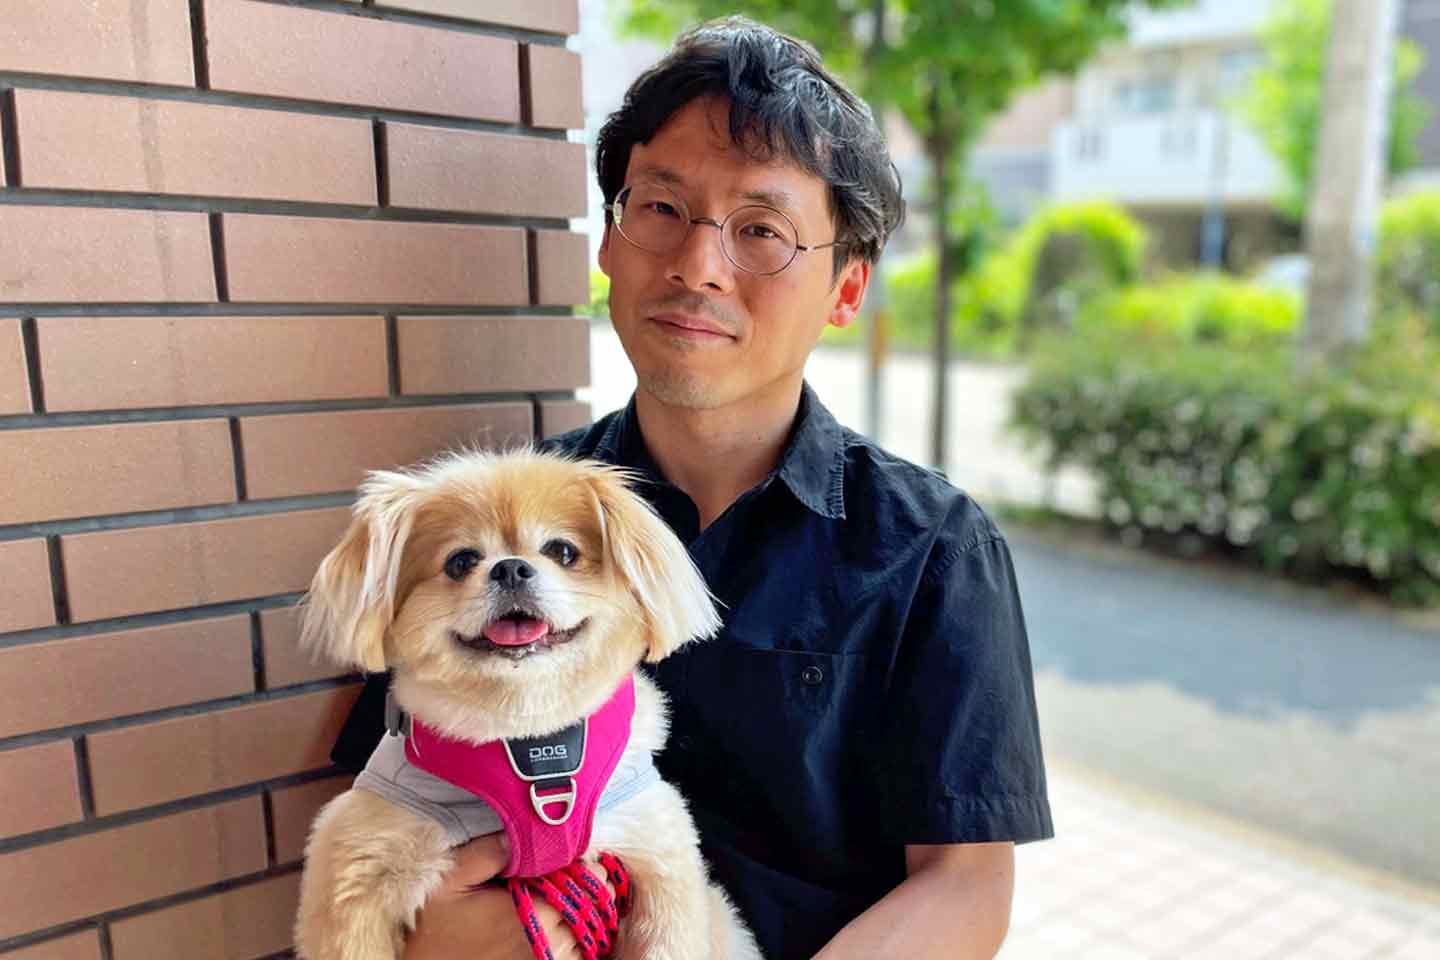 食べ渋り・分離不安症…料理研究家 冨田ただすけさん家族の、愛犬と楽しく暮らすための工夫